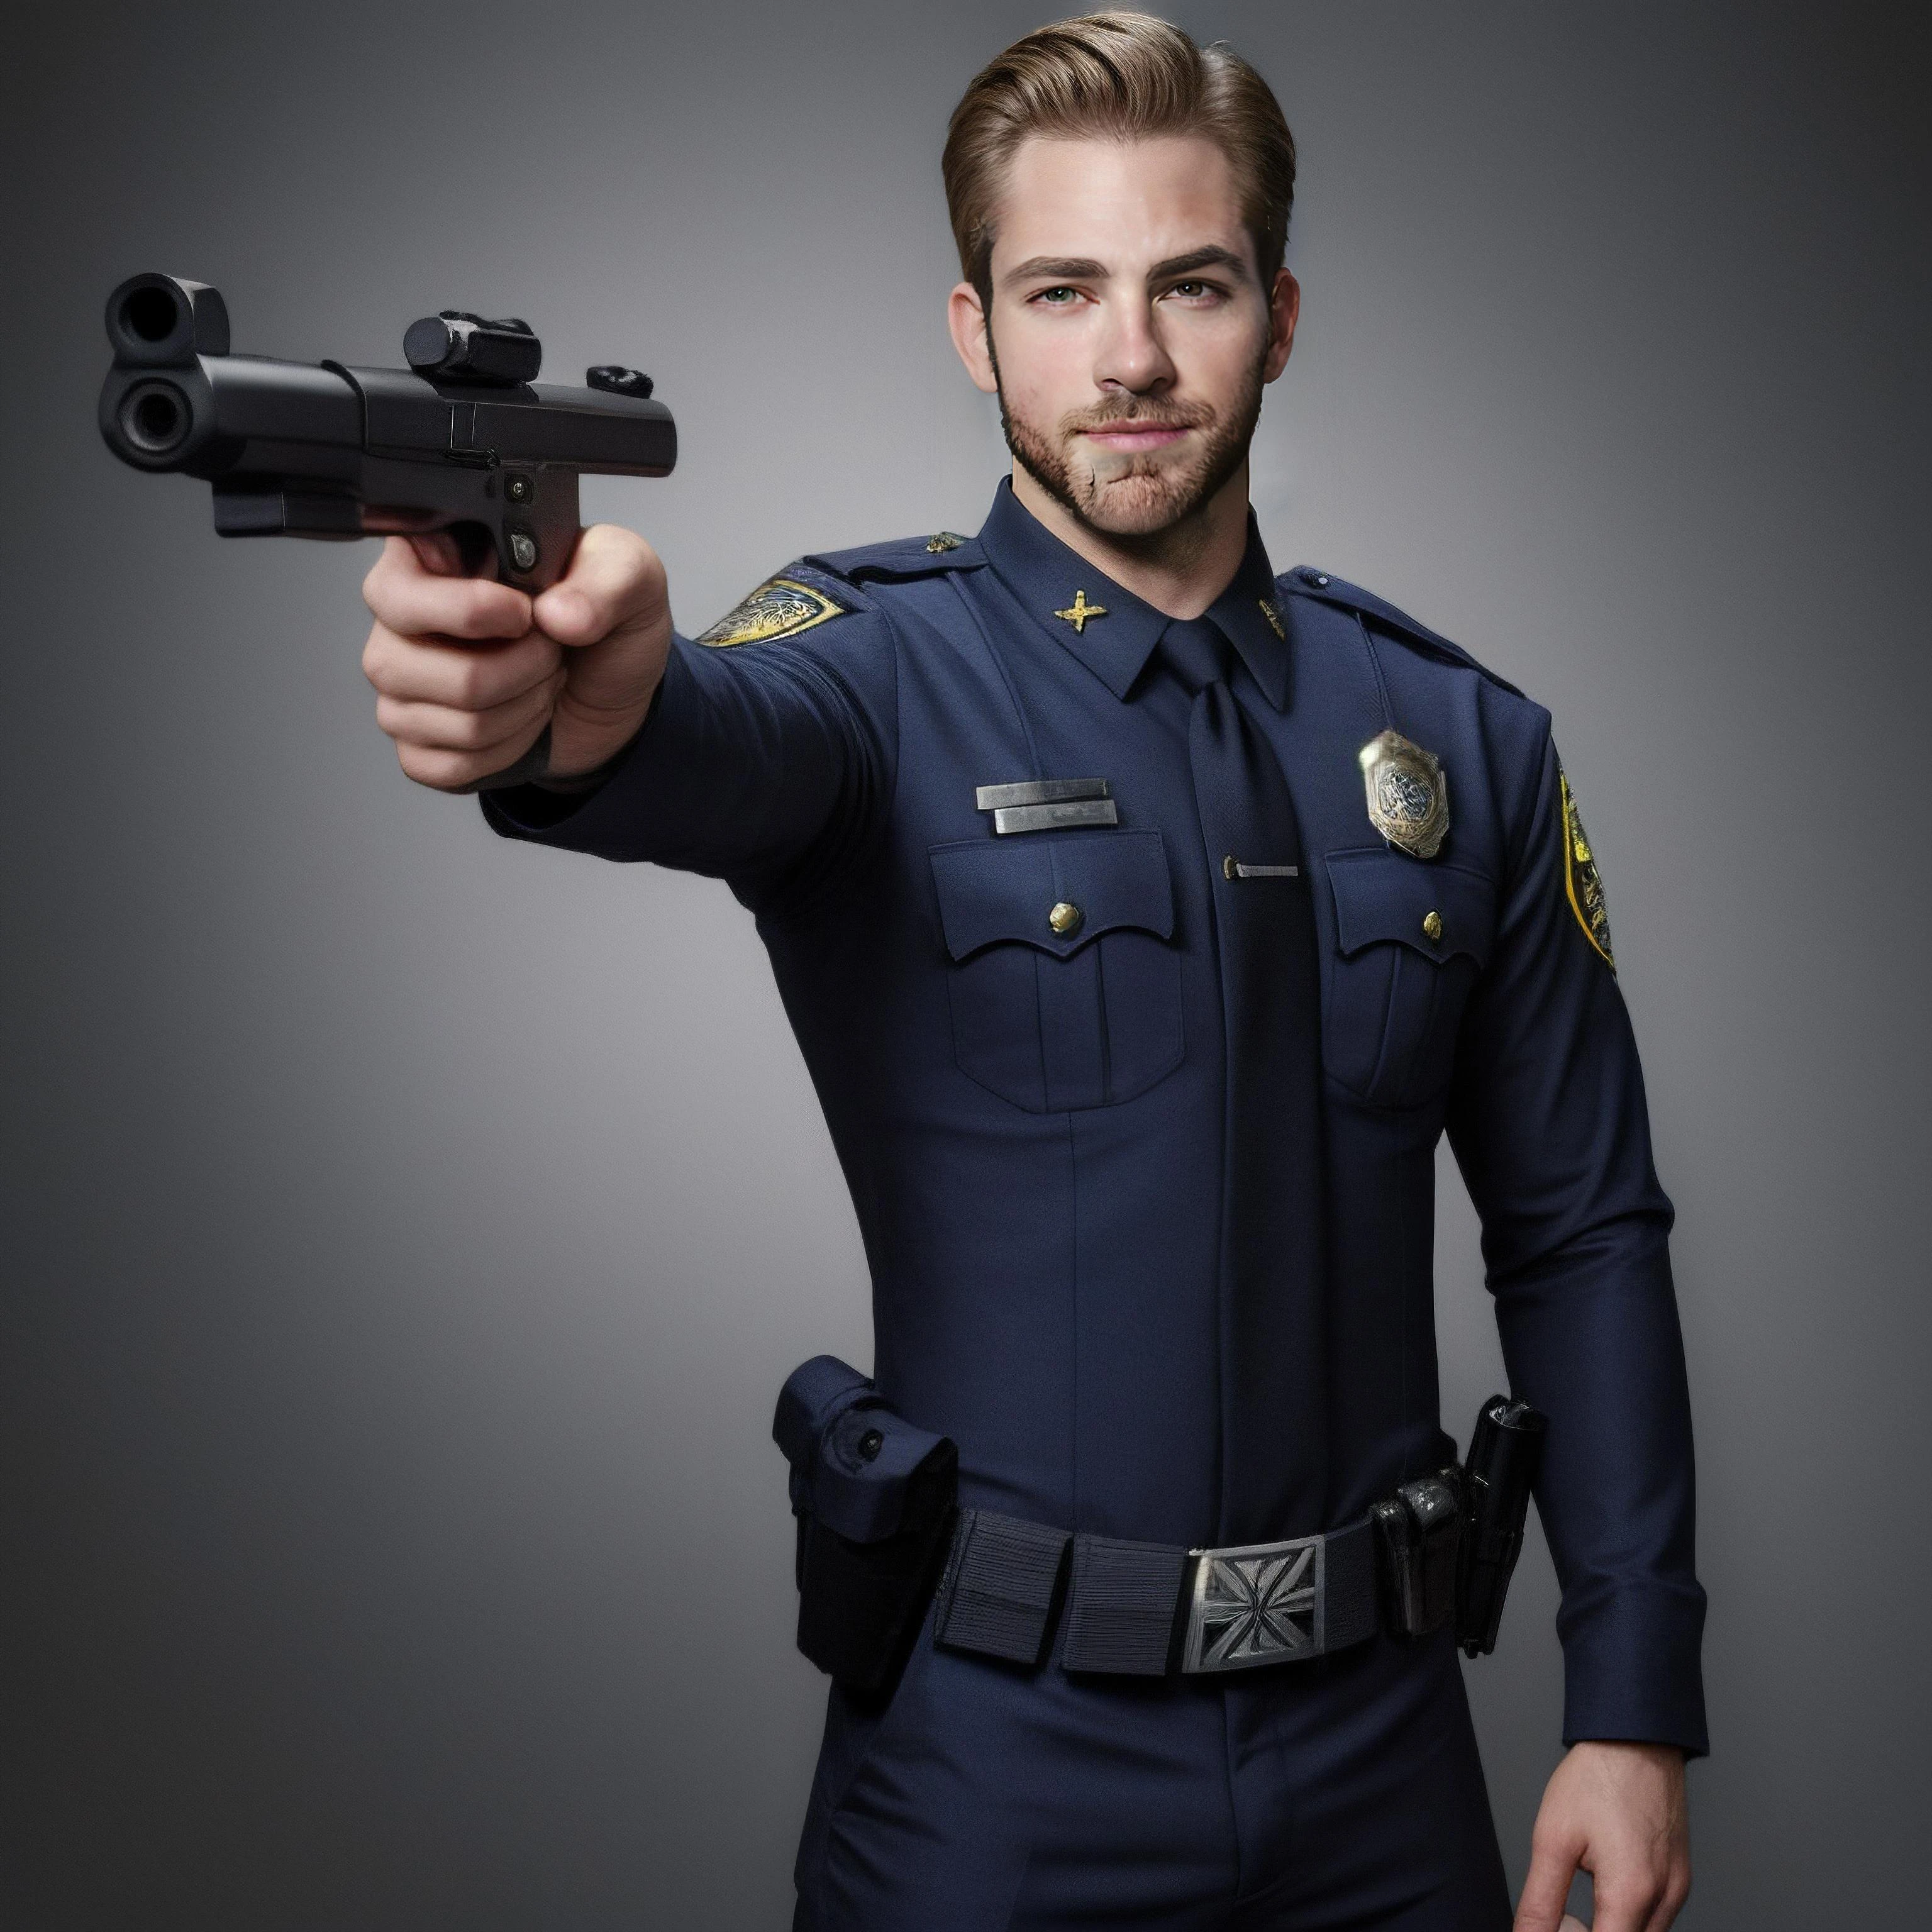 Chris Pine, Gesicht, Männlich, Körper, Polizei-Outfit, gun on waist, nach vorne zeigend, polizei pose